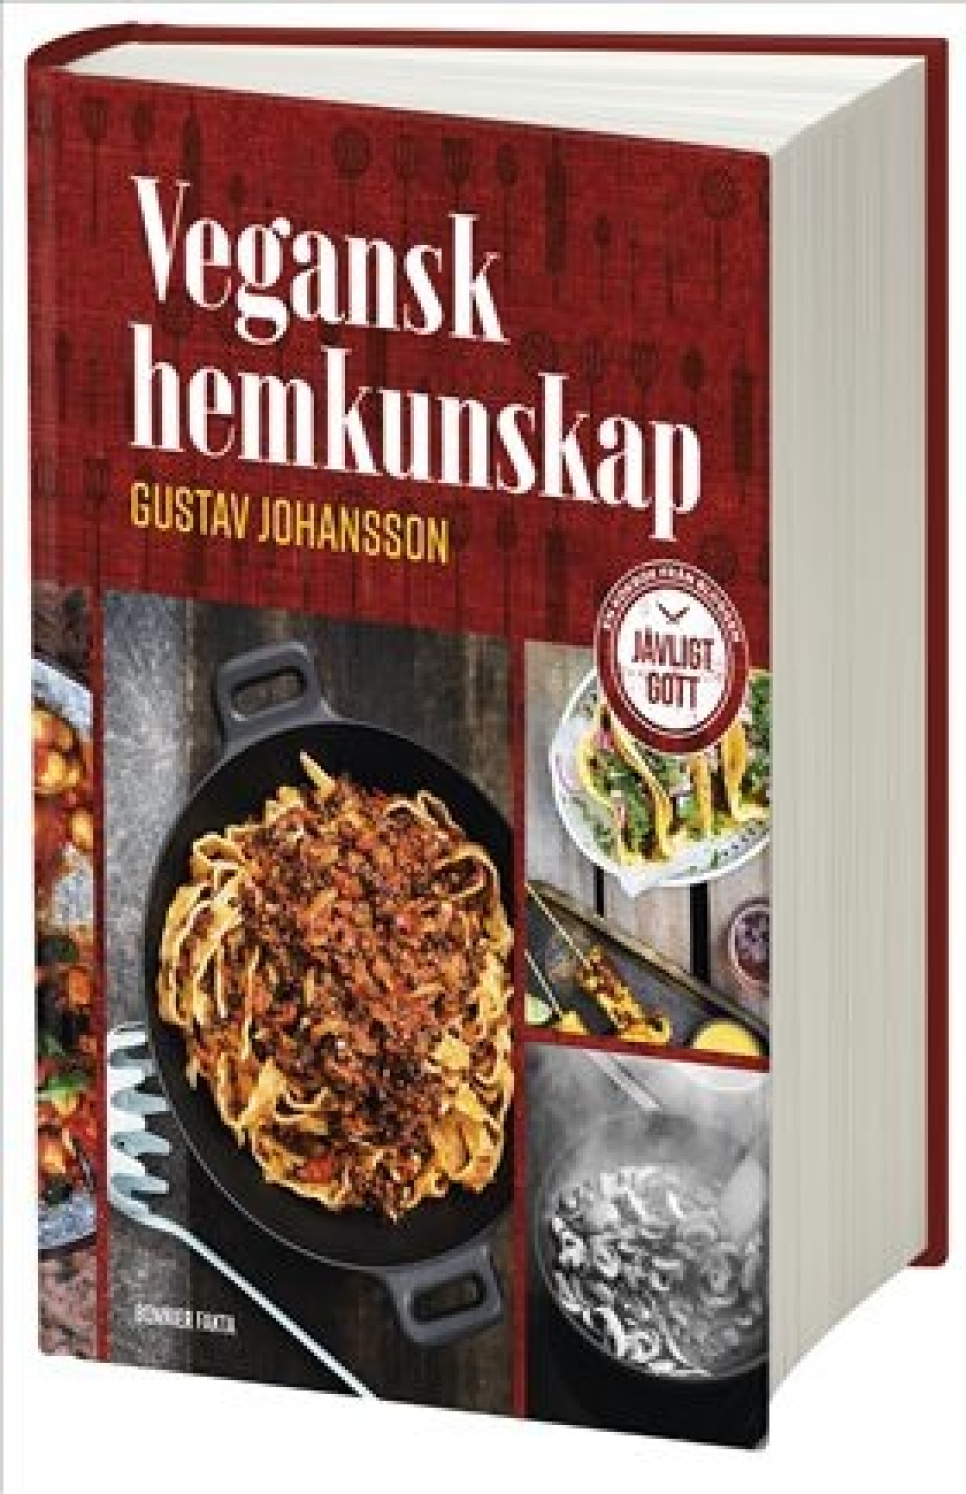 Vegansk hemkunskap av Gustav Johansson in the group Cooking / Cookbooks / Vegetarian at KitchenLab (1355-26327)